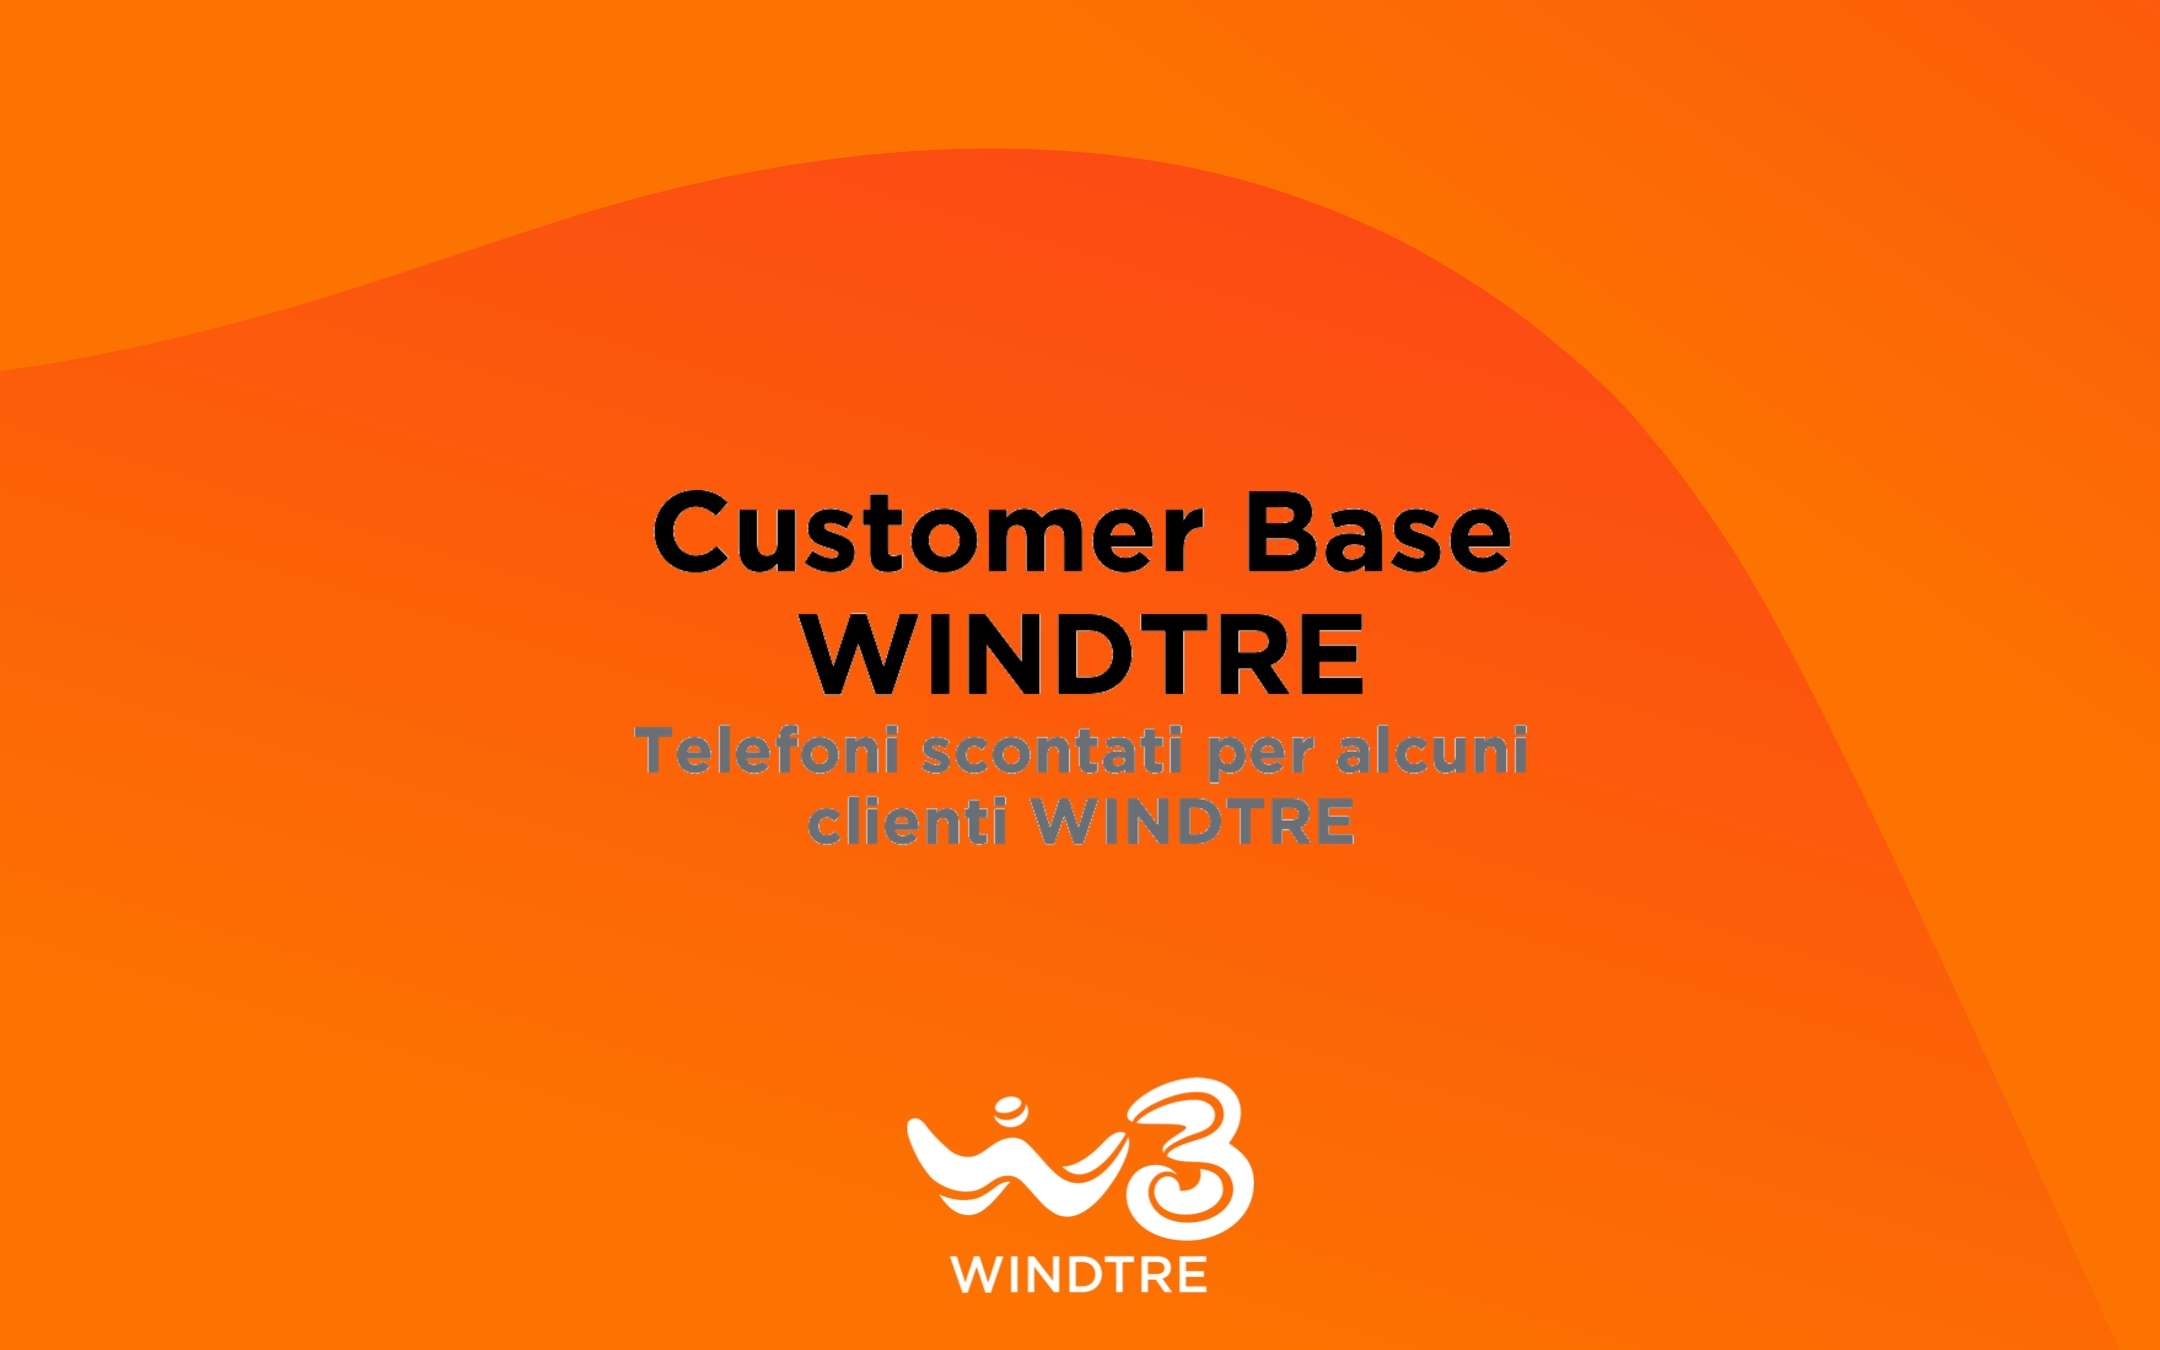 Customer Base WINDTRE: device a prezzi scontati